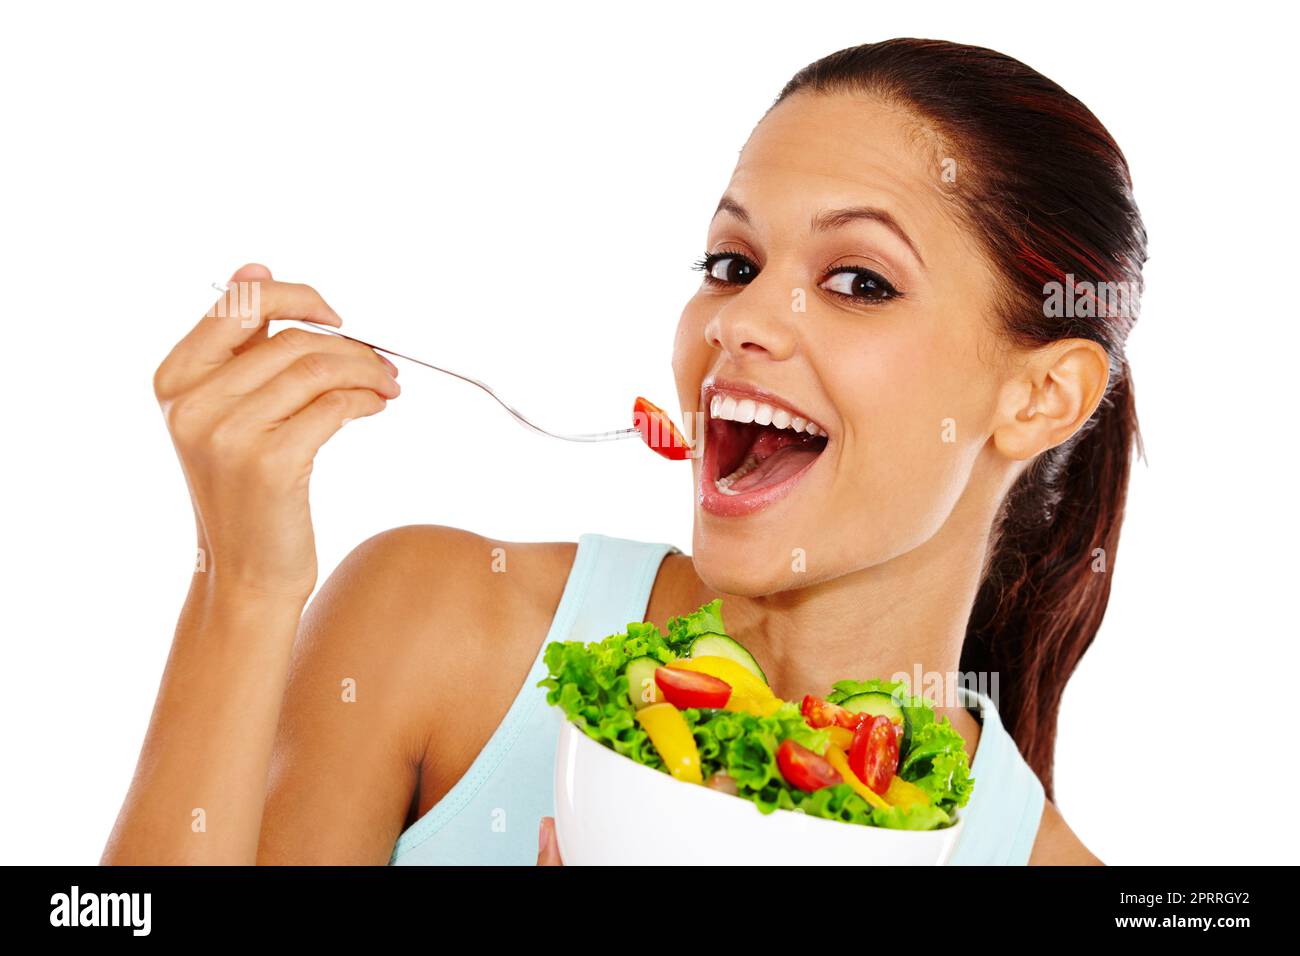 Elle aime les repas sains. Portrait d'une jeune femme attrayante appréciant une salade saine. Banque D'Images